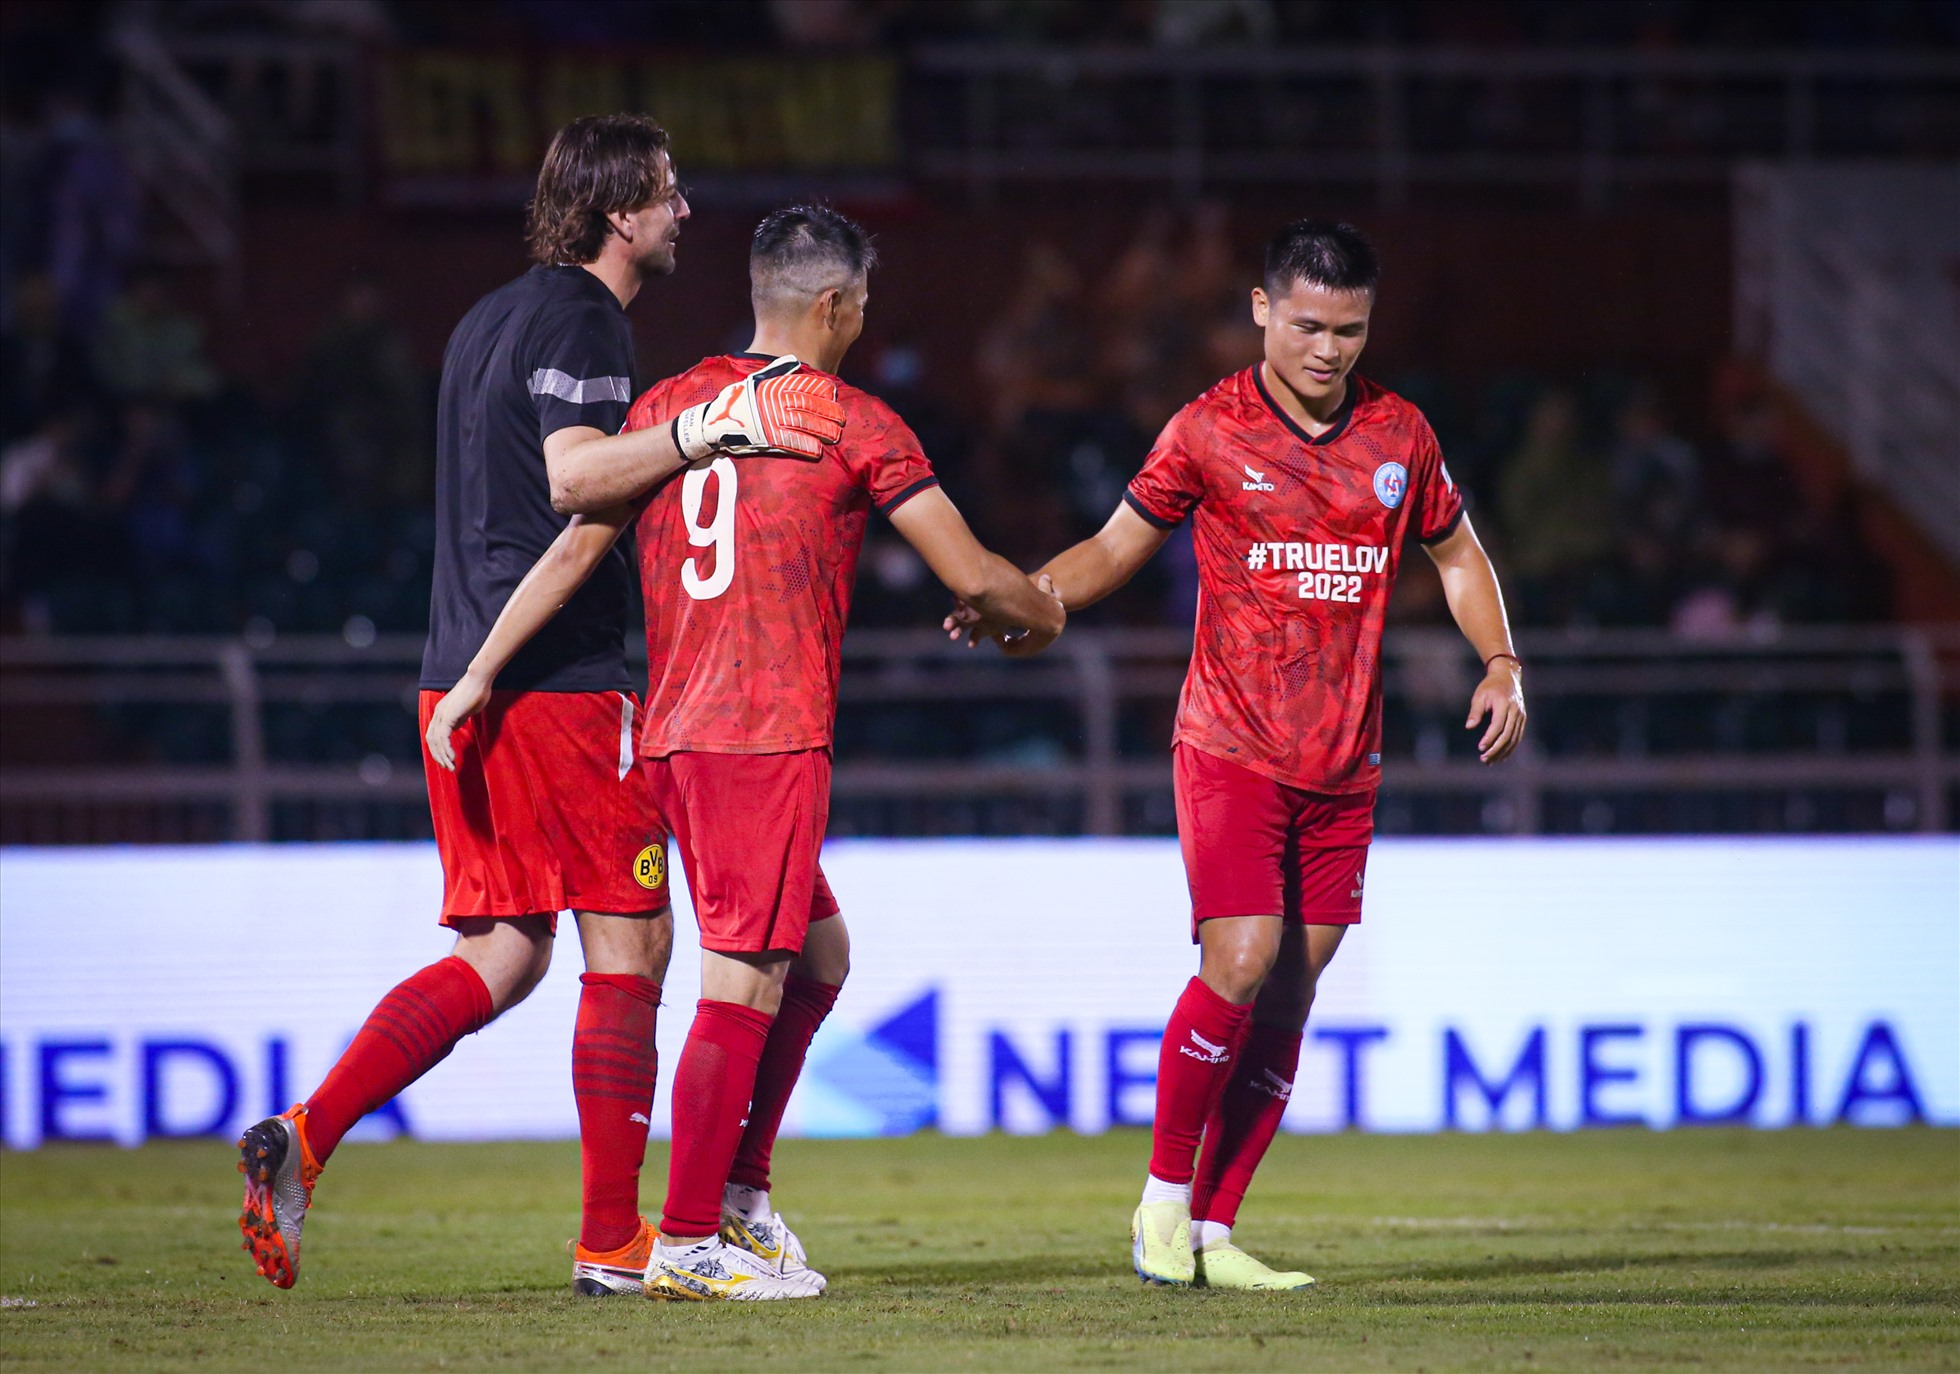 Kết quả chung cuộc, All Stars Việt Nam nhận thất bại 1-4 trước các cựu danh thủ Dortmund. Trận đấu với thông điệp ý nghĩa được kỳ vọng sẽ lan toả sự yêu thương để chia sẻ với những mất mất do đại dịch COVID-19 tại Việt Nam.